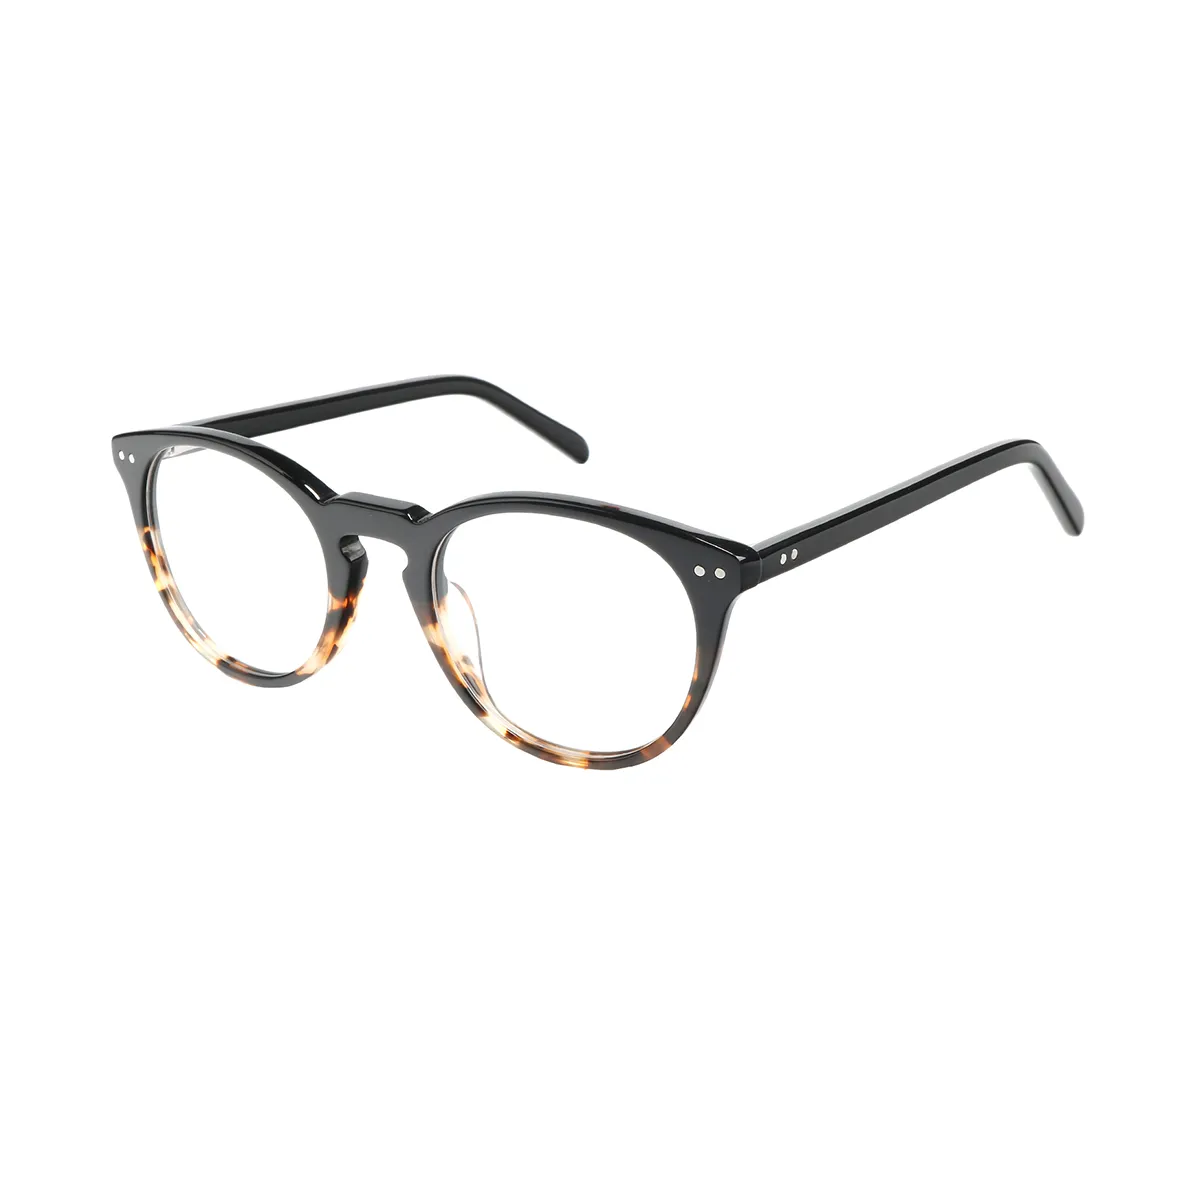 Ayliff - Oval Tortoiseshell Glasses for Men & Women